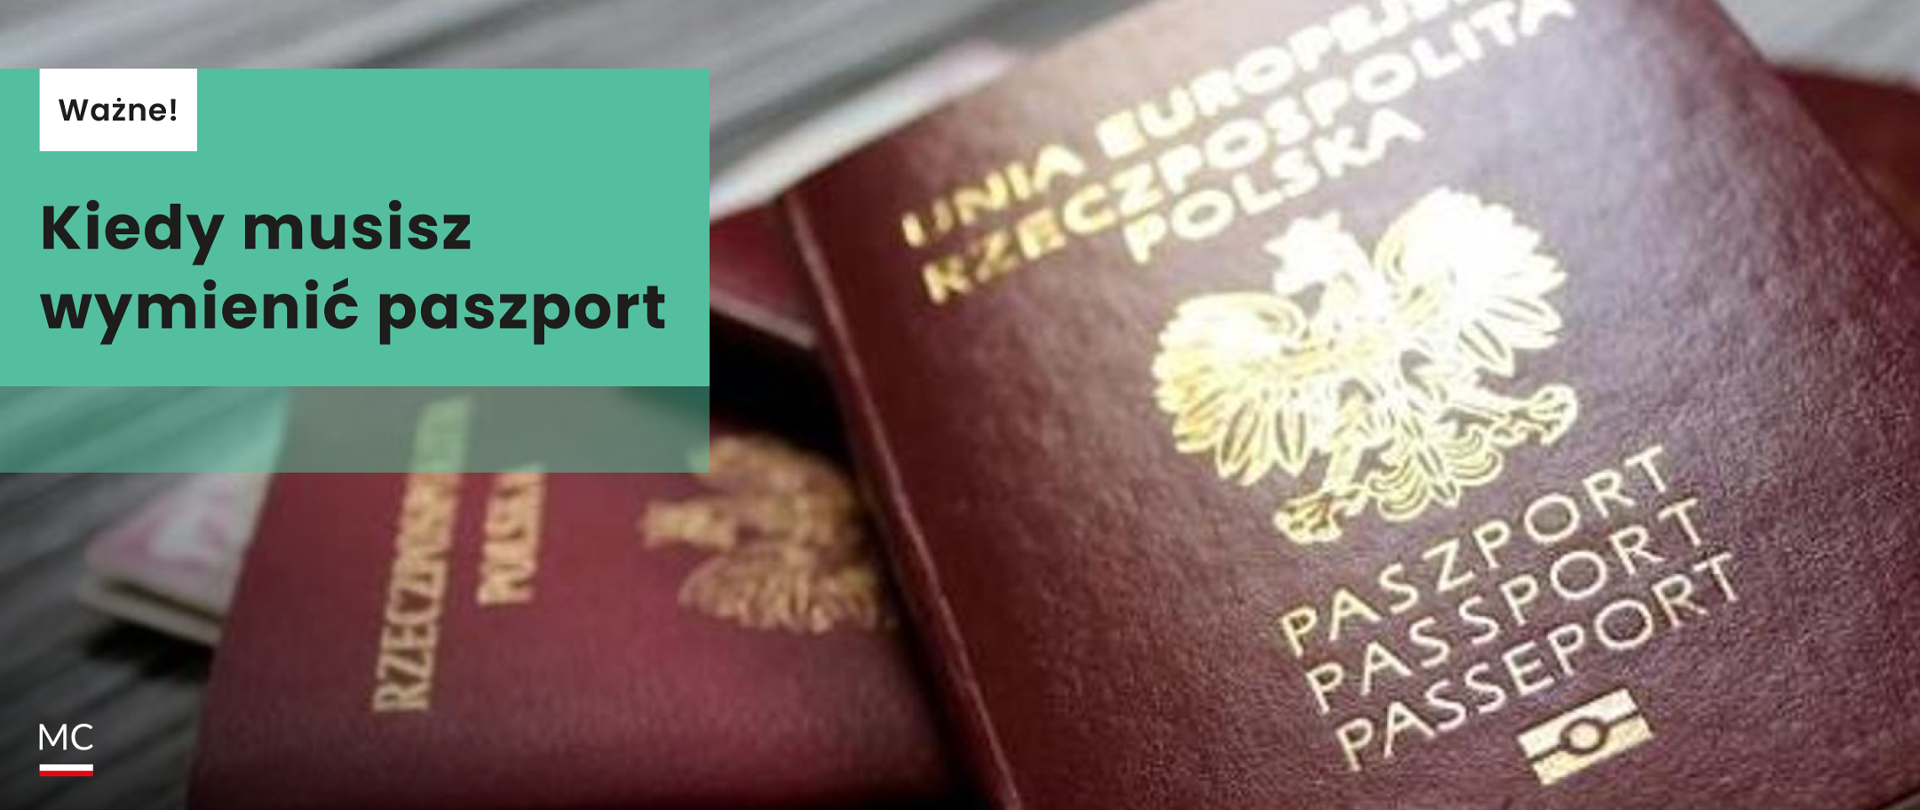 Kiedy musisz wymienić paszport_panorama